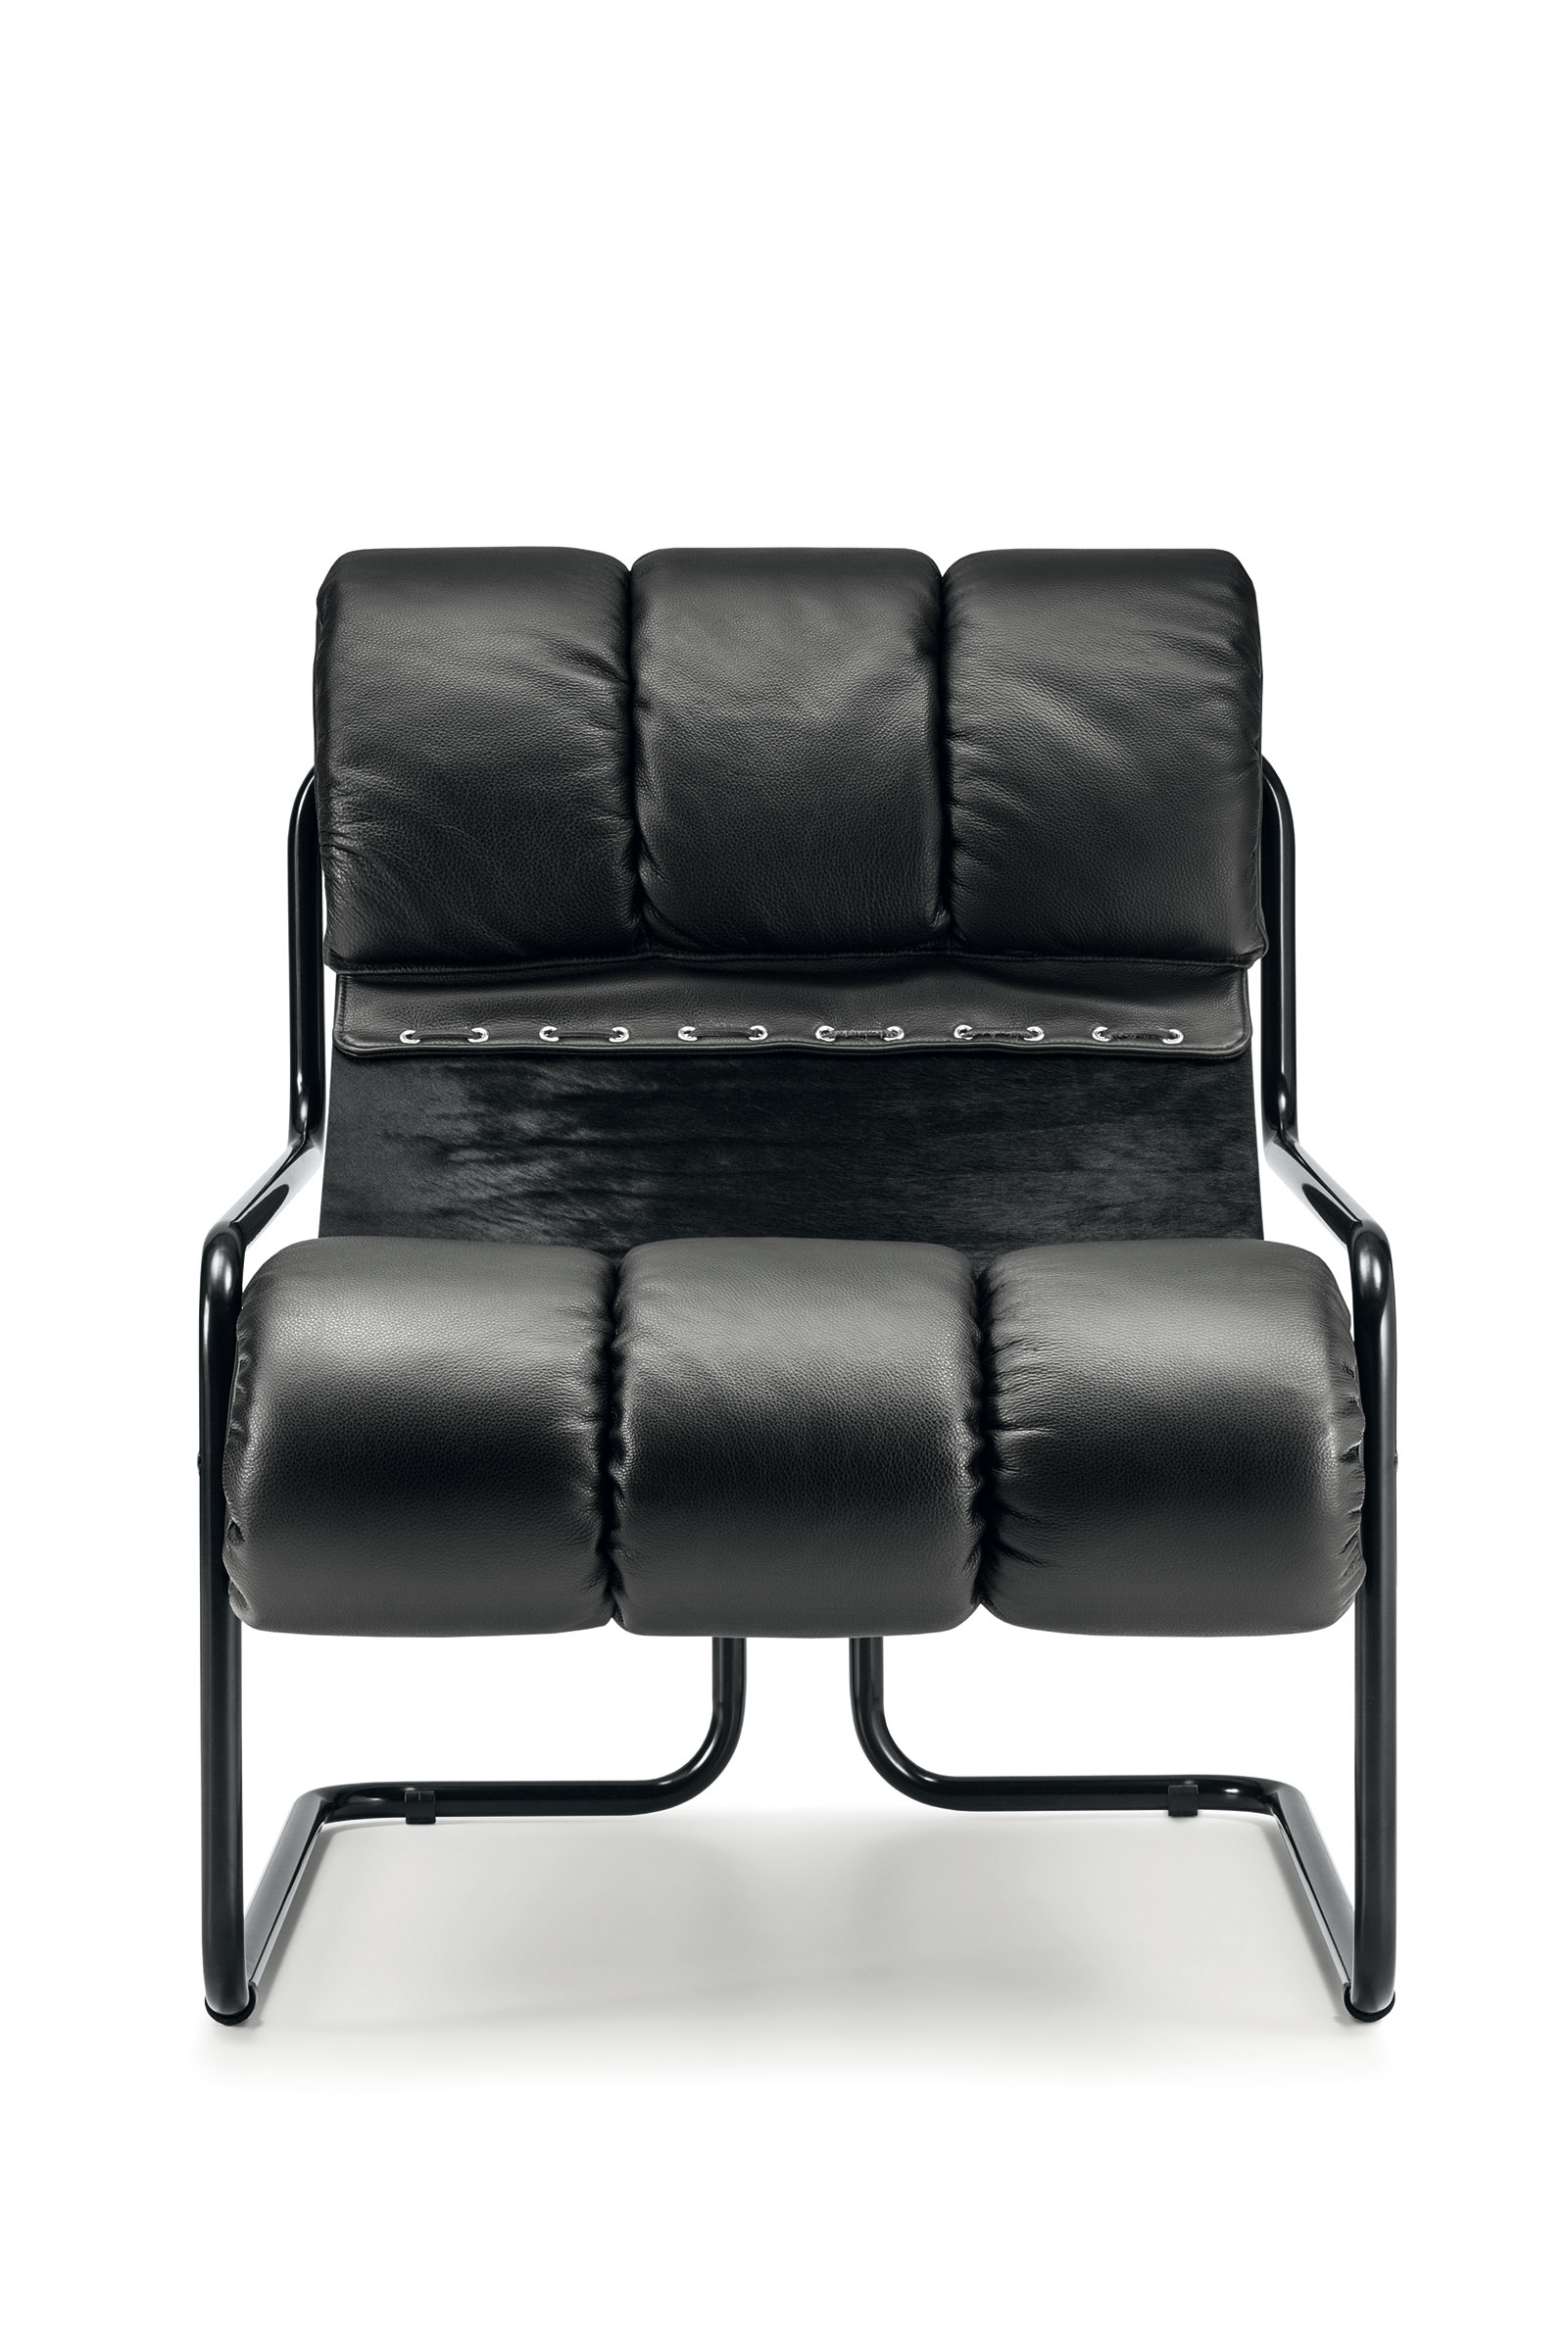 La chaise longue nera in pelle Tucroma è stata disegnata nel 1971 da Guido Faleschini. Produzione italiana, vendita online, consegna gratuita a domicilio.